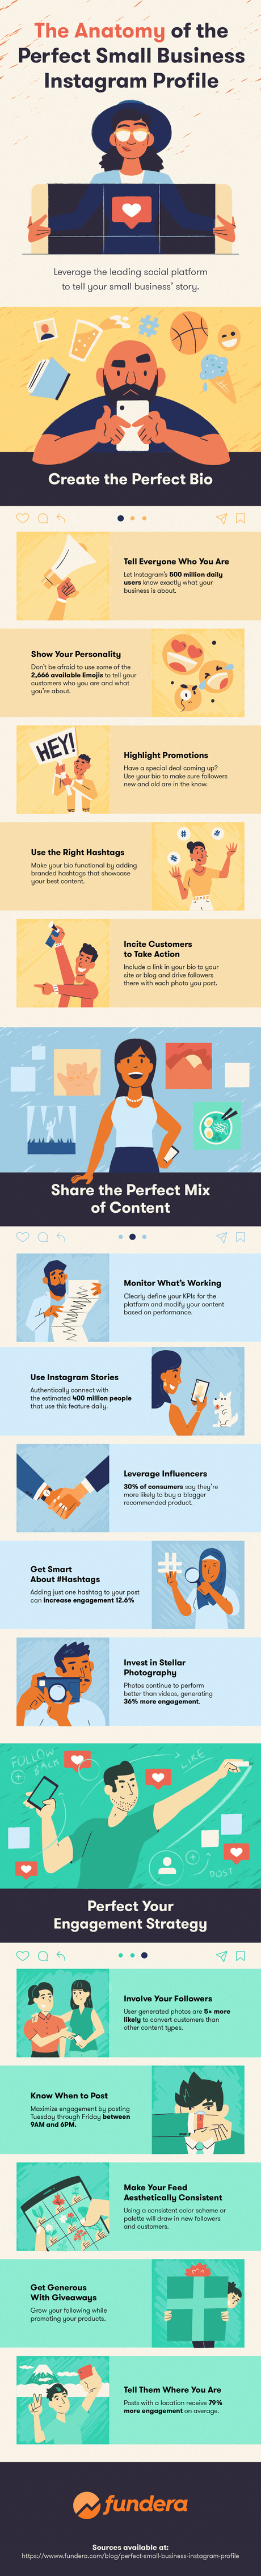 15 consejos para crear el perfil perfecto en Instagram para pequeños negocios